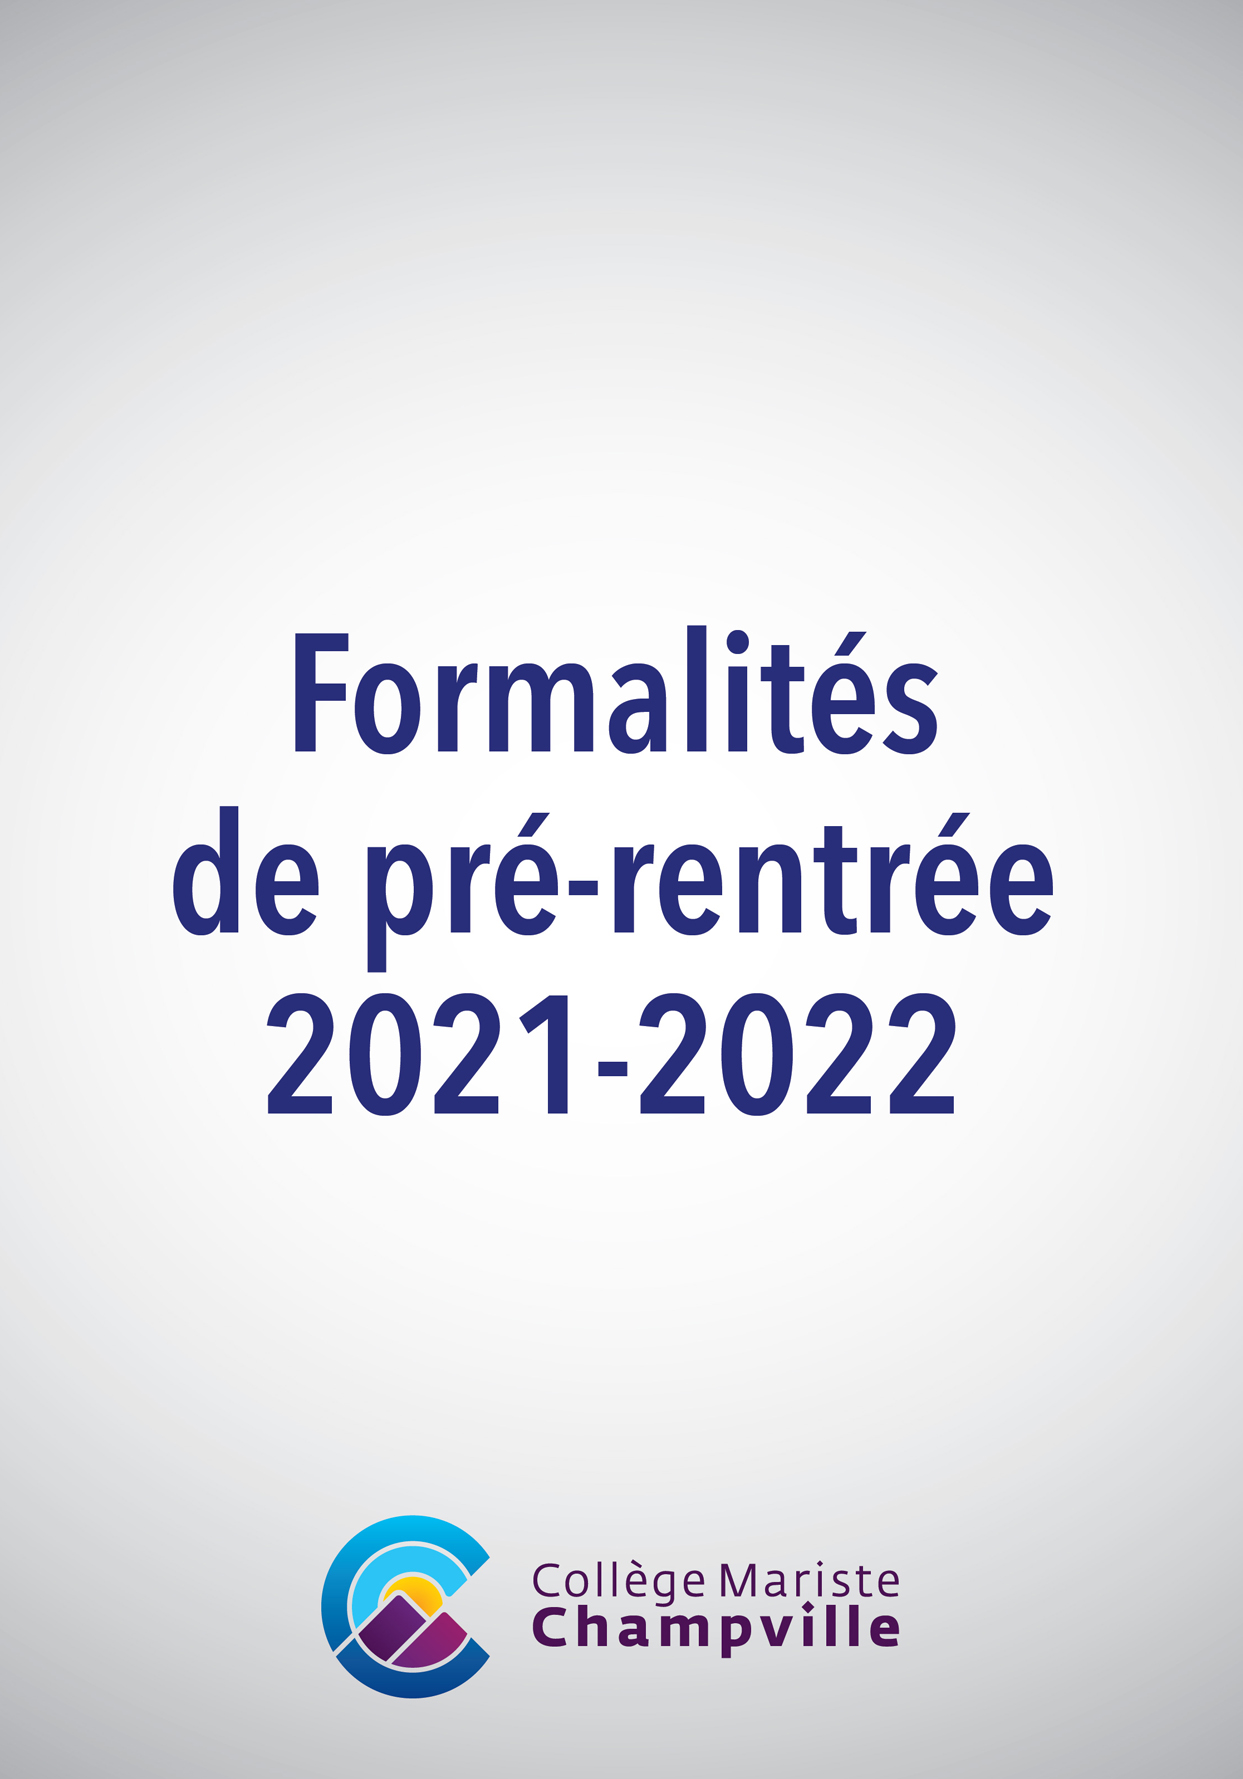 Formalités de pré-rentrée 2021-2022